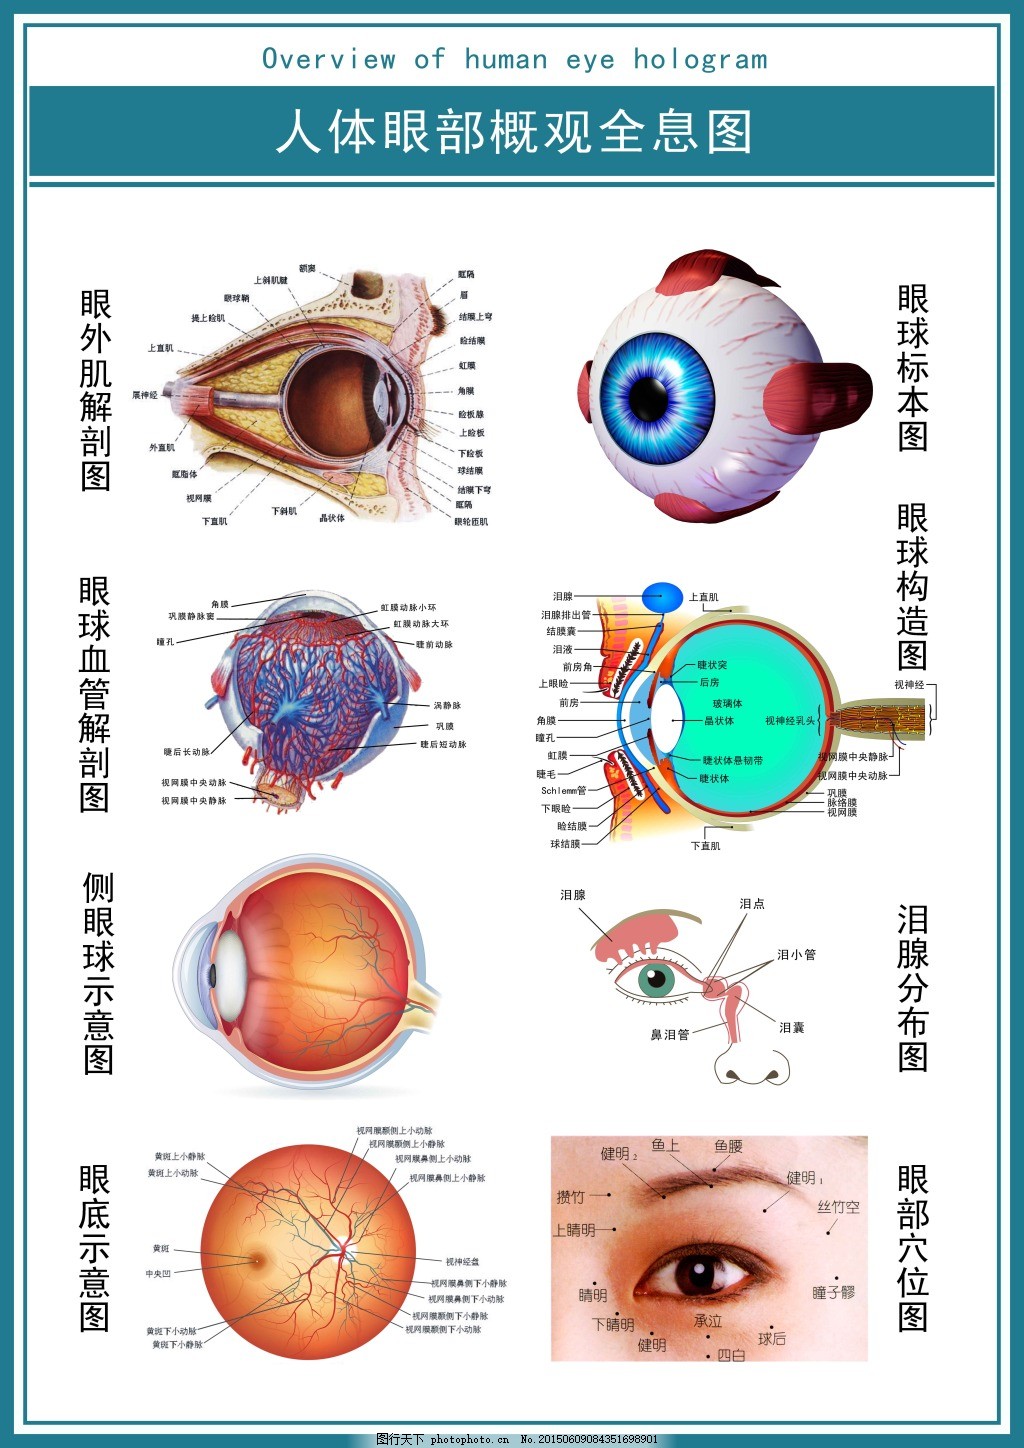 人体解剖图和器官--眼球结构图_素材公社